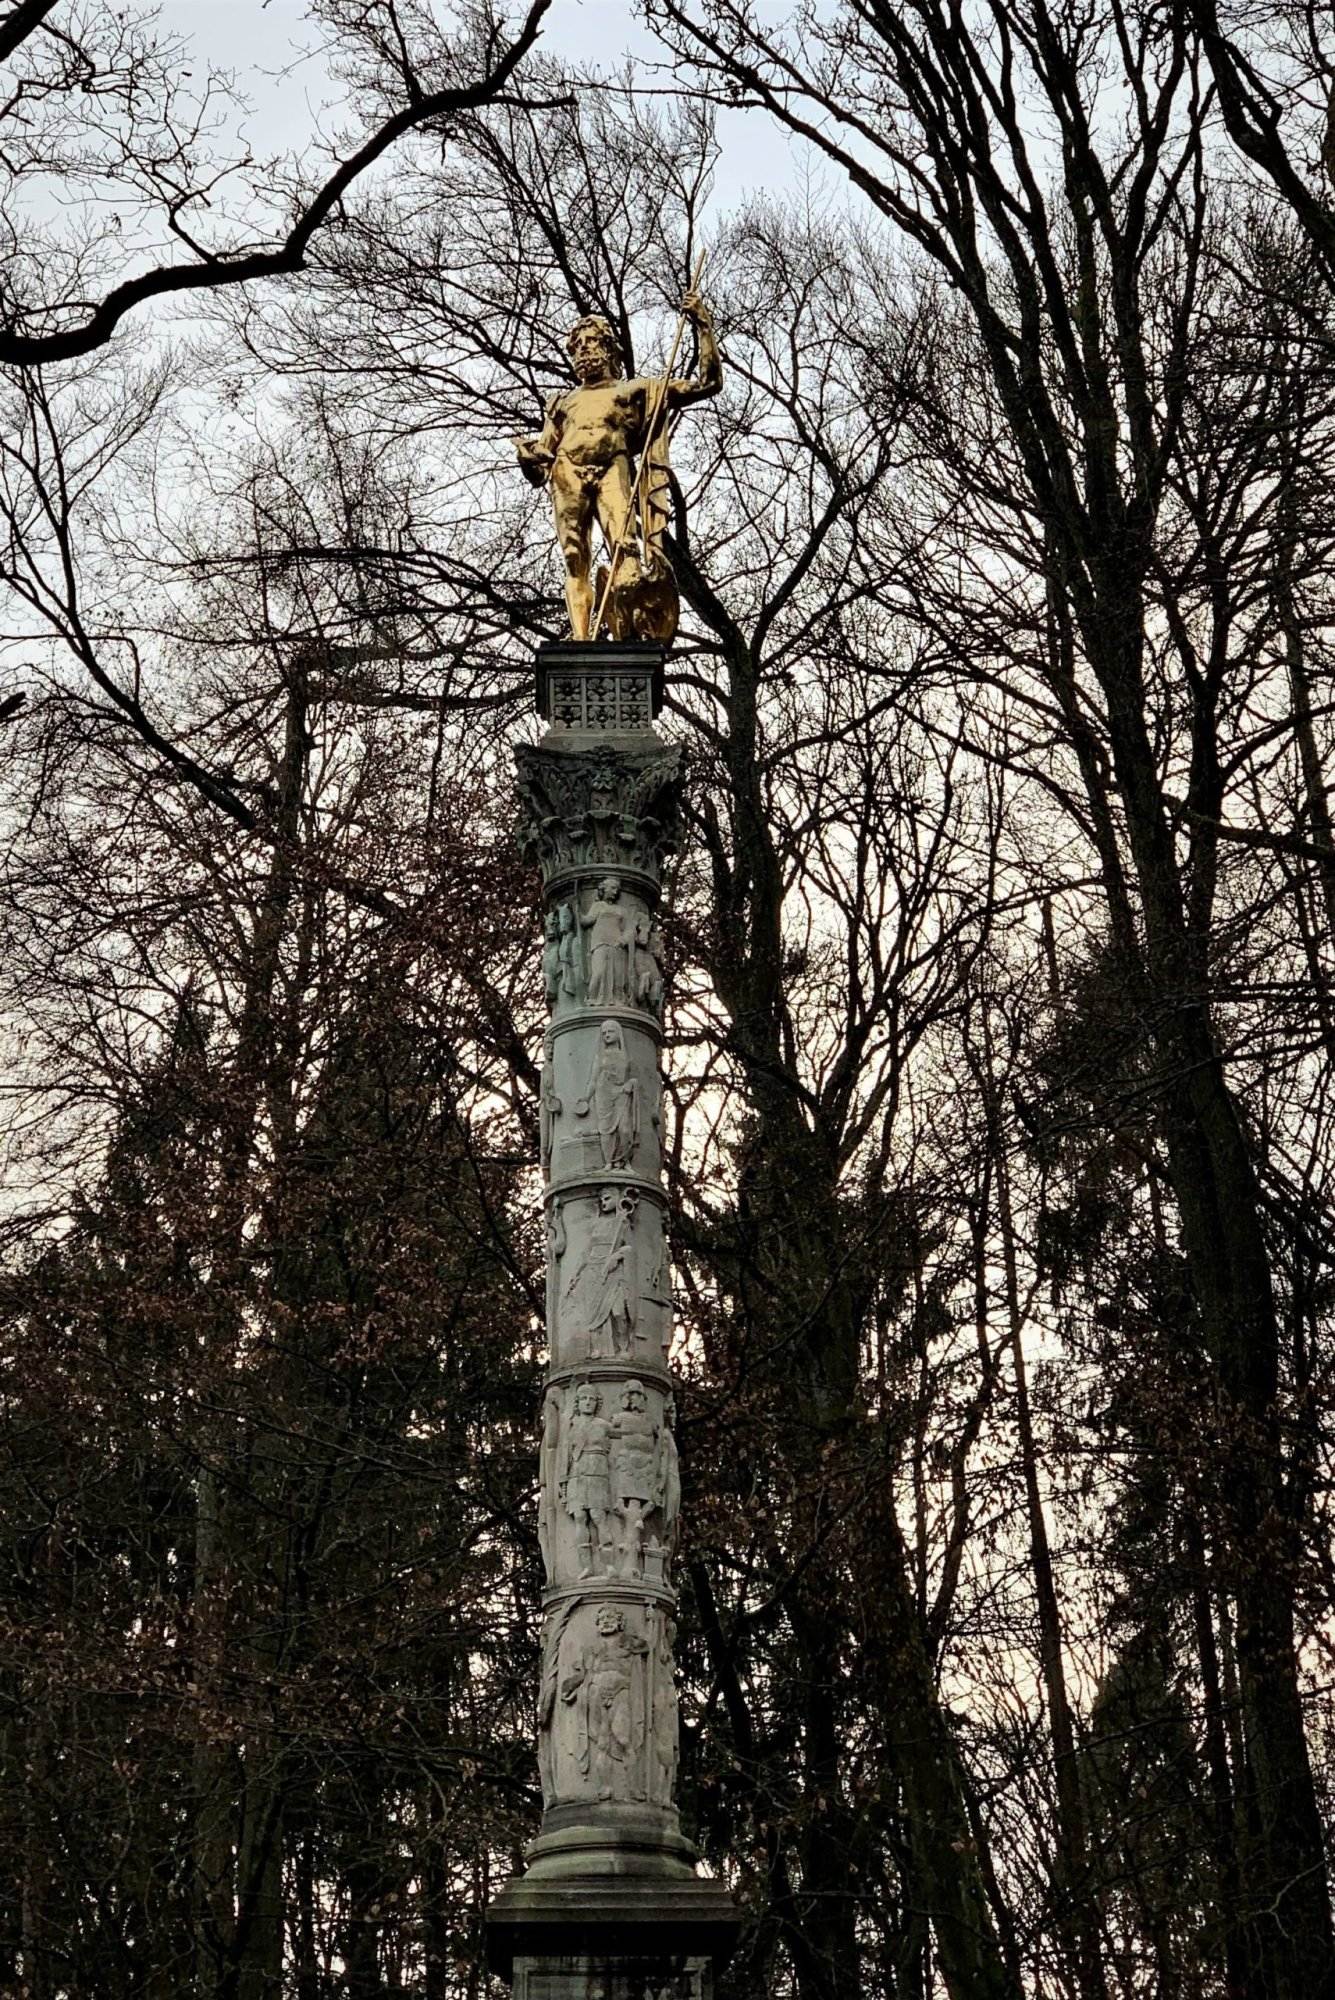 Eine Statue steht auf einer Säule in einem Park.